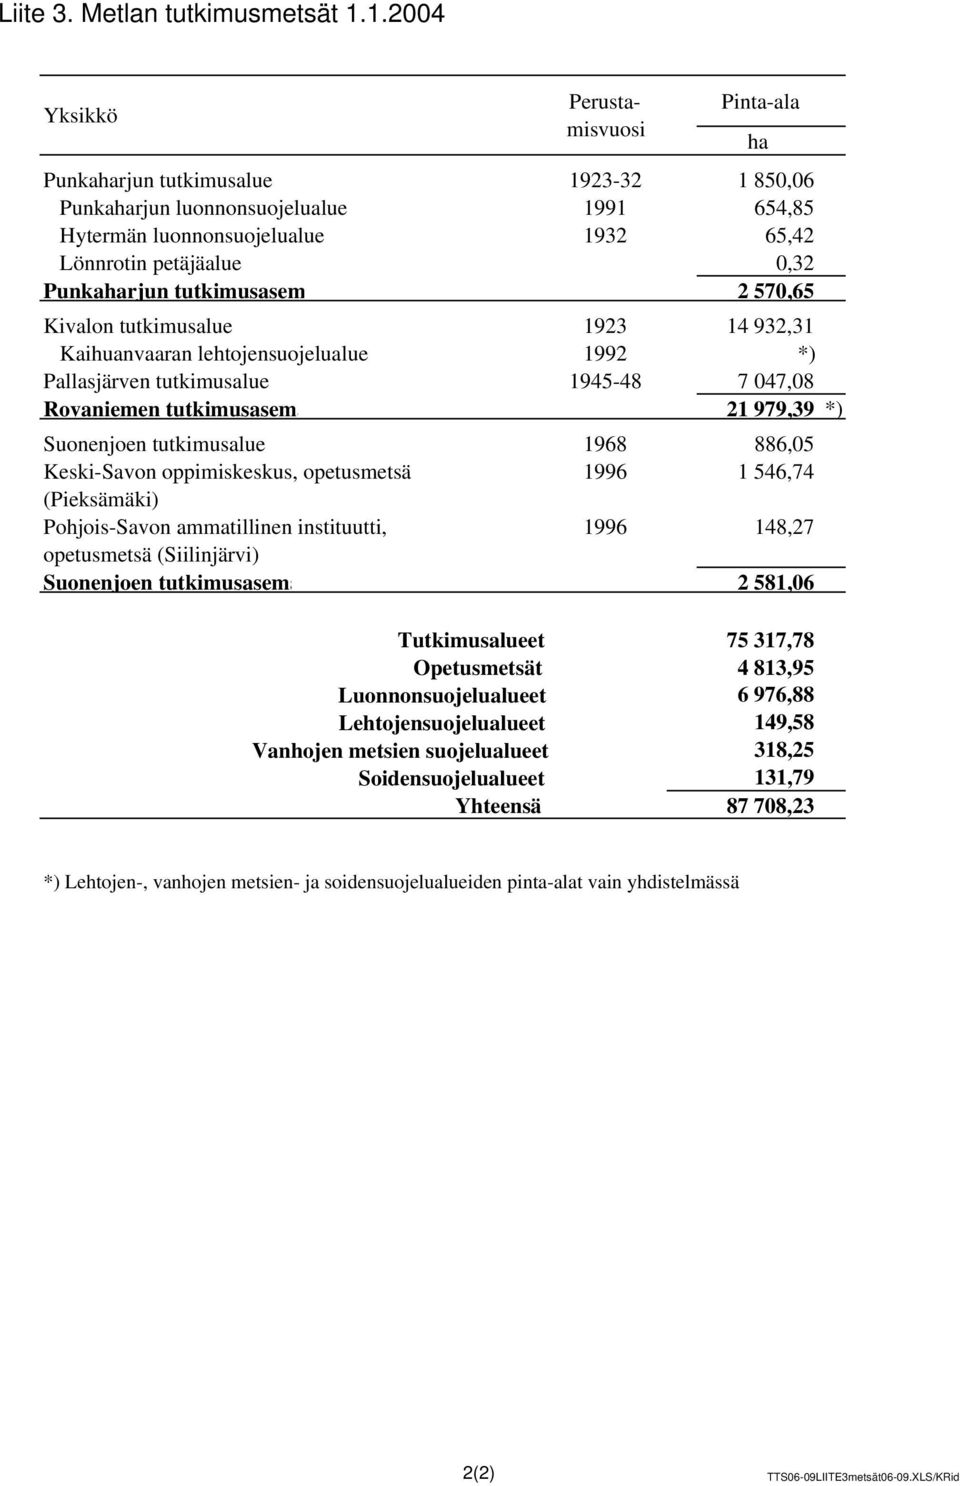 Punkaharjun tutkimusasem 2 570,65 Kivalon tutkimusalue 1923 14 932,31 Kaihuanvaaran lehtojensuojelualue 1992 *) Pallasjärven tutkimusalue 1945-48 7 047,08 Rovaniemen tutkimusasema 21 979,39 *)